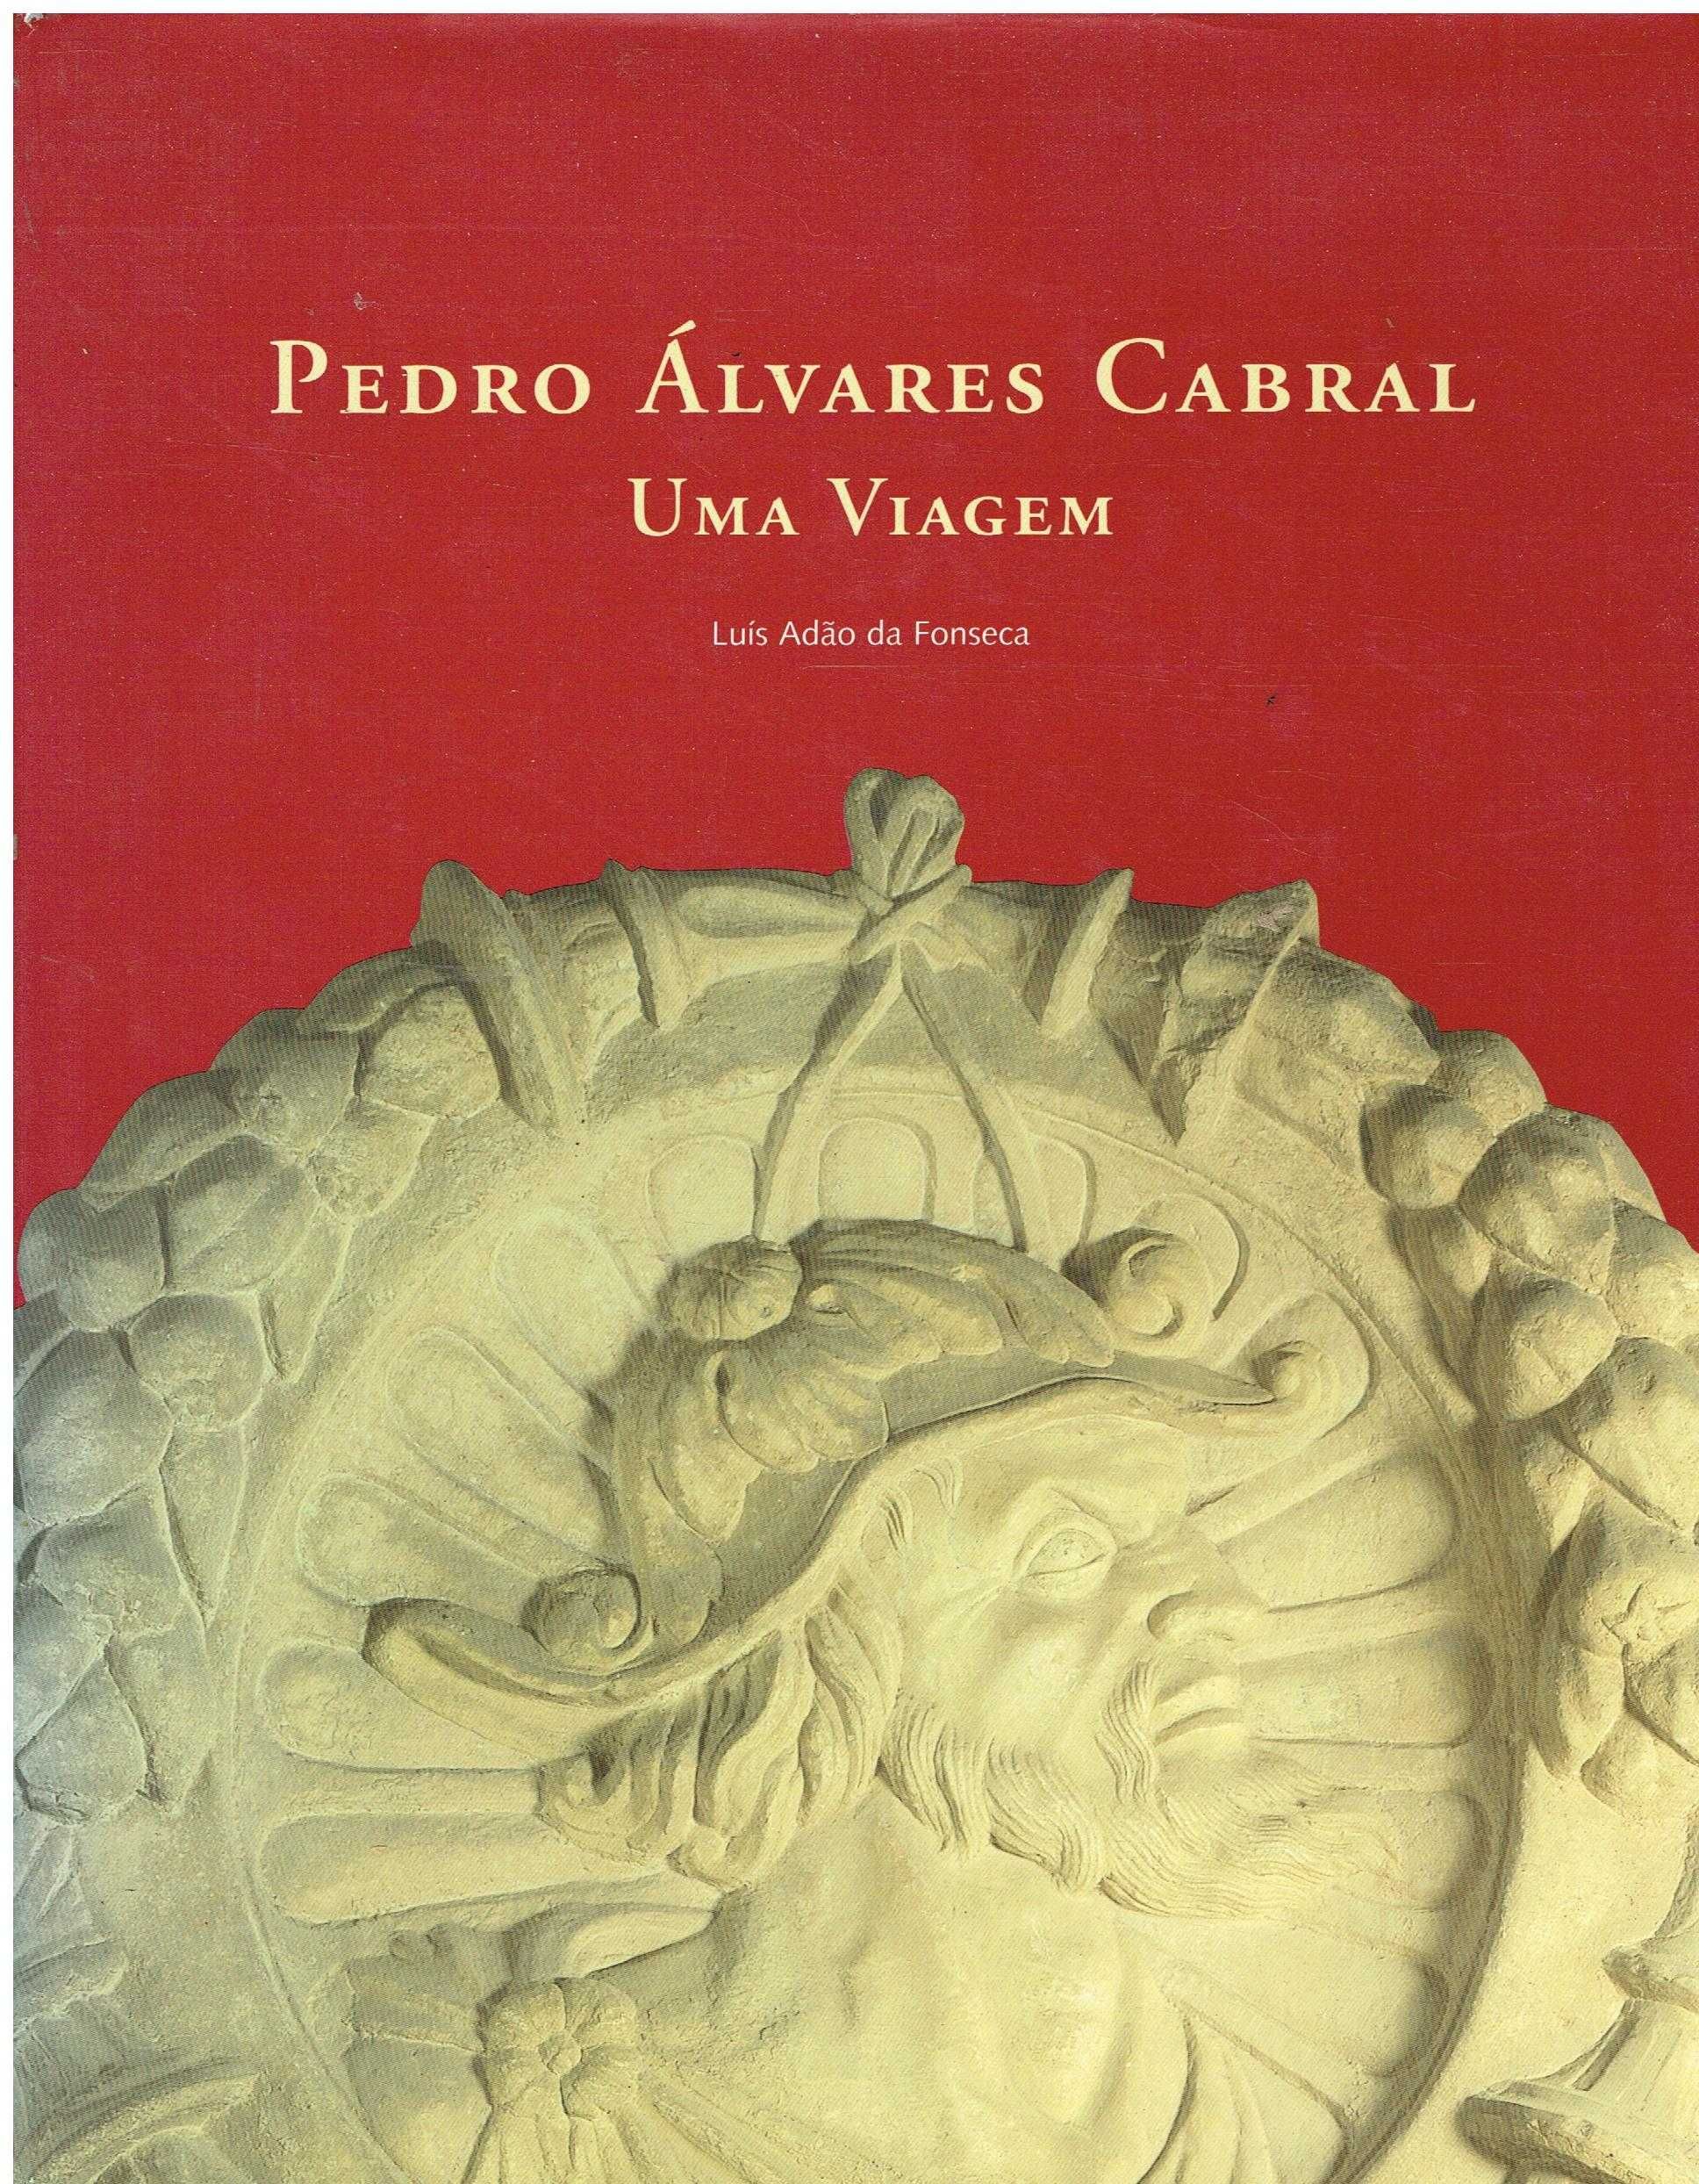 569

Pedro Álvares Cabral : uma viagem 
de Luís Adão da Fonseca